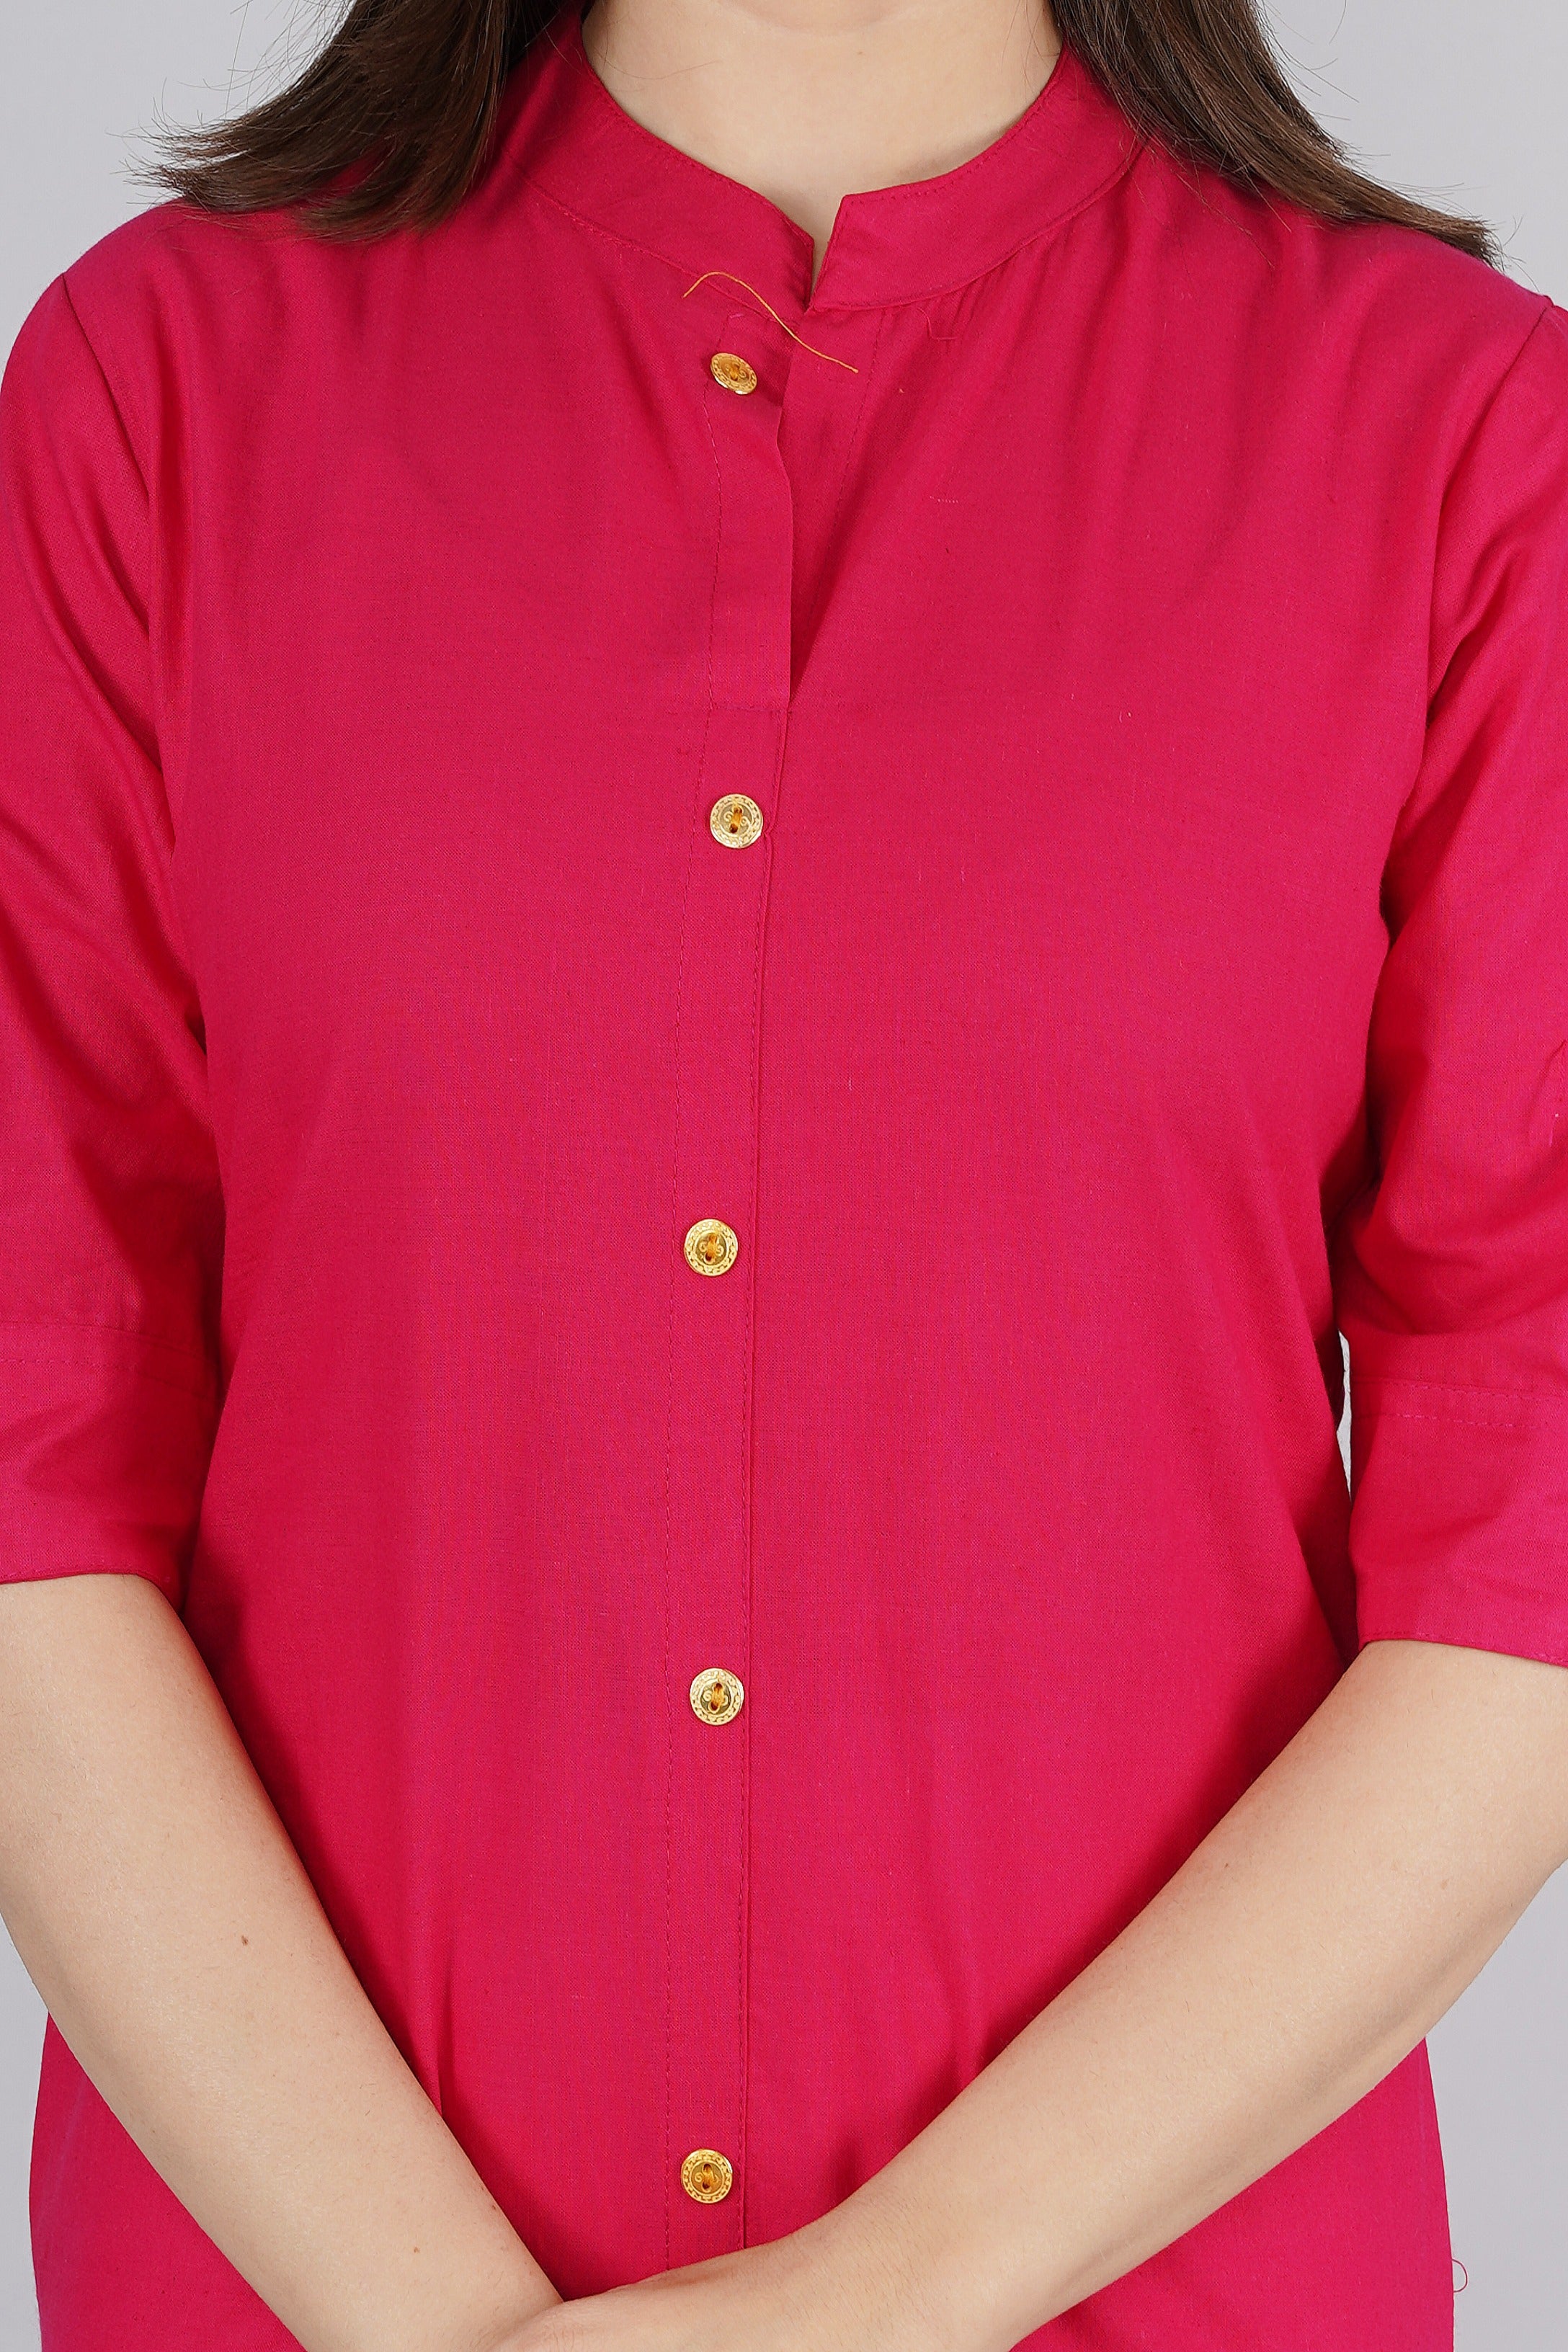 Women's Pink Cotton Kurta by Kipek (1pc)